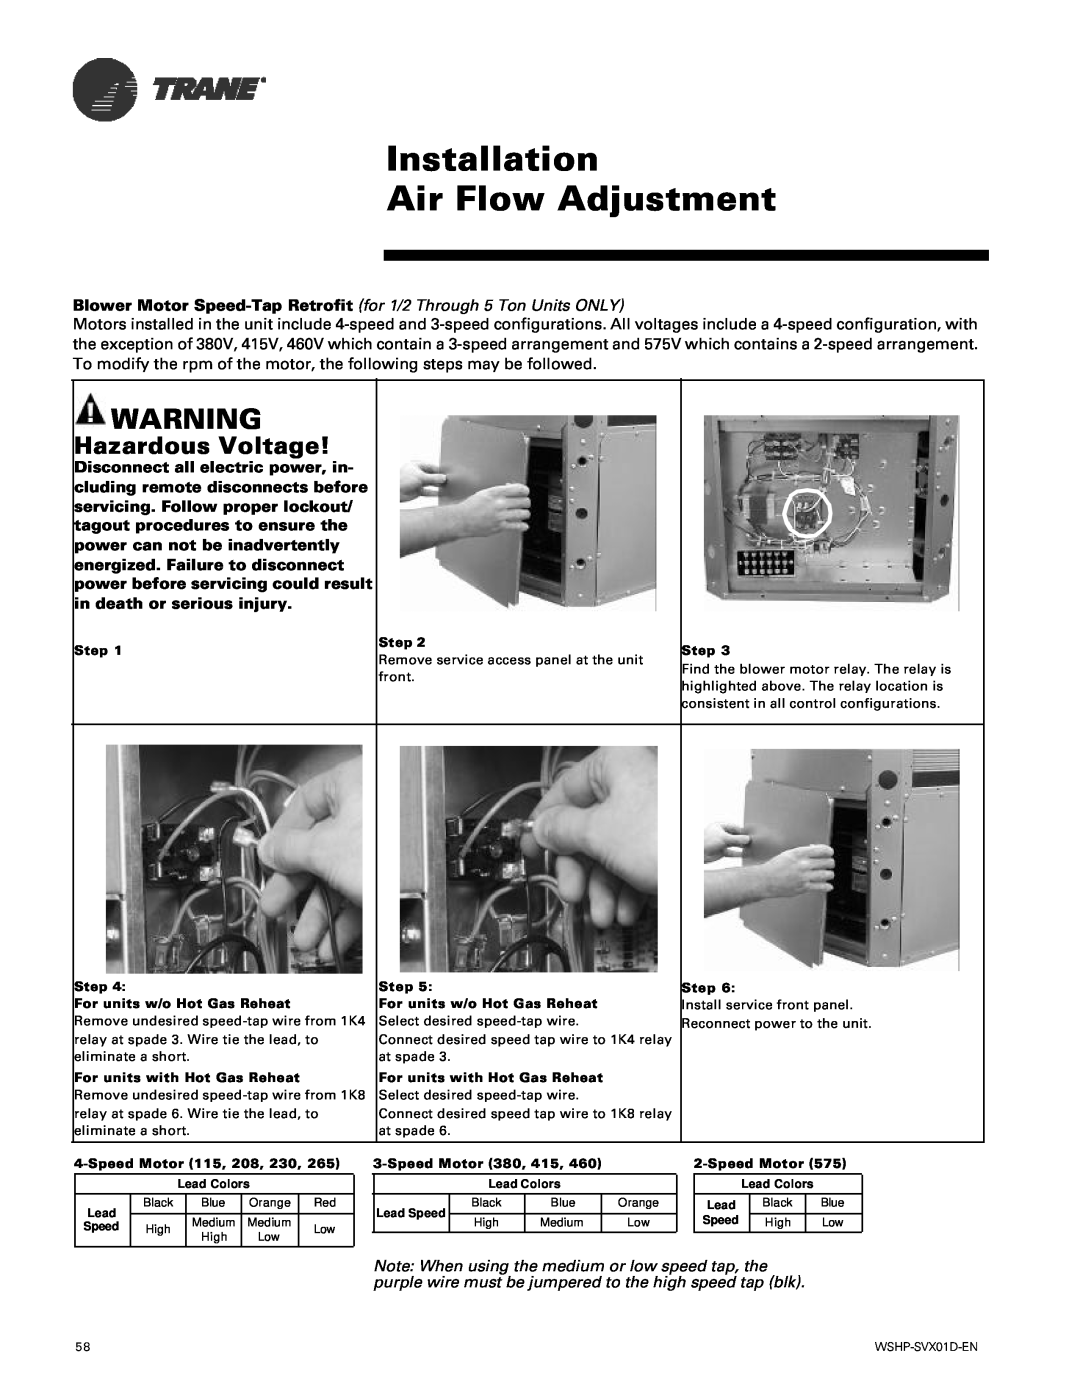 Trane GEH, GEV manual Installation Air Flow Adjustment, Hazardous Voltage 